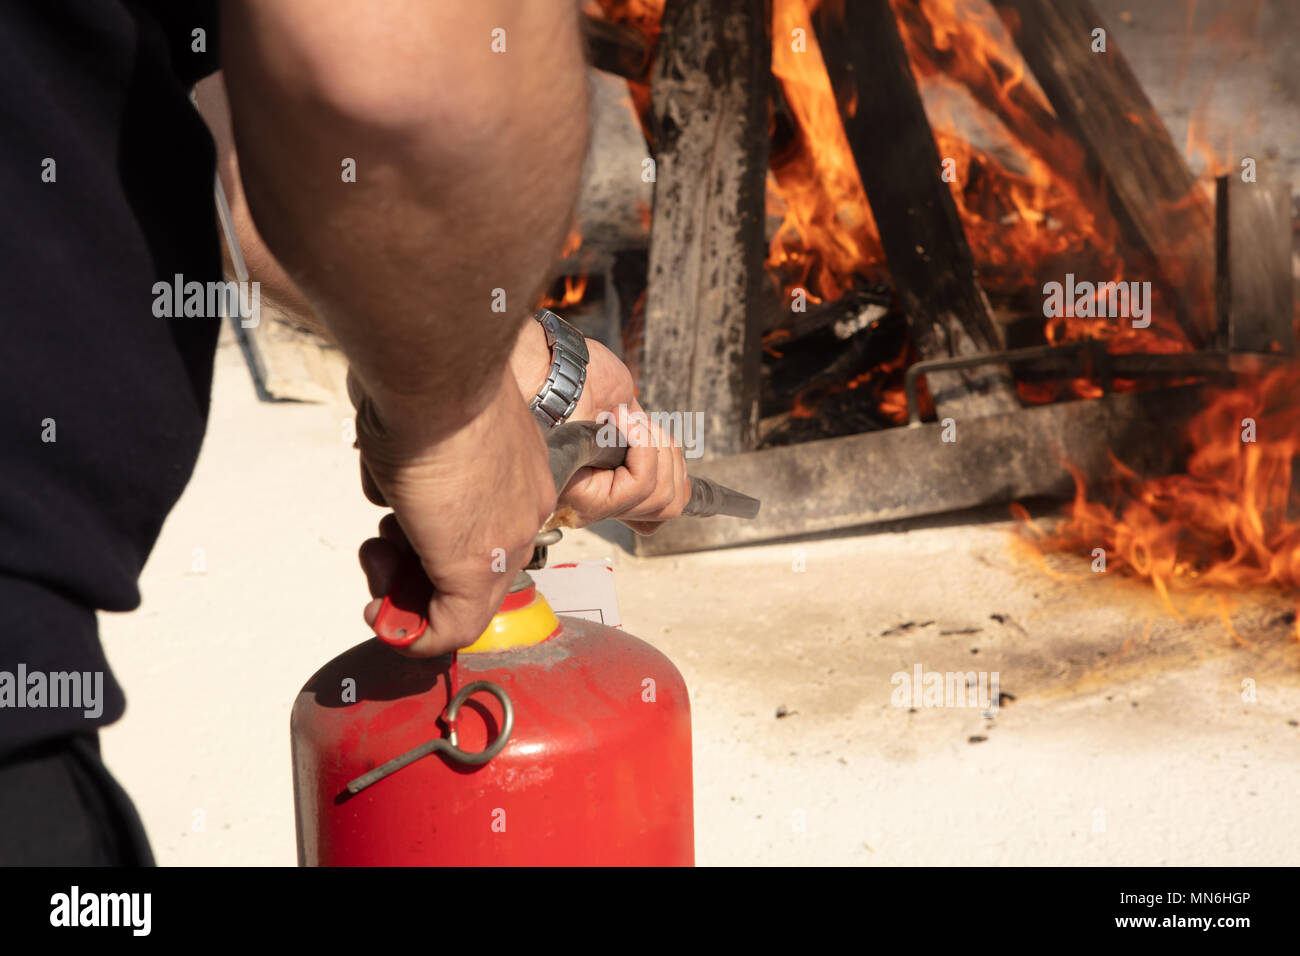 Giovane uomo rivolto in rosso di un estintore in avanti verso il fuoco in una situazione grave Foto Stock